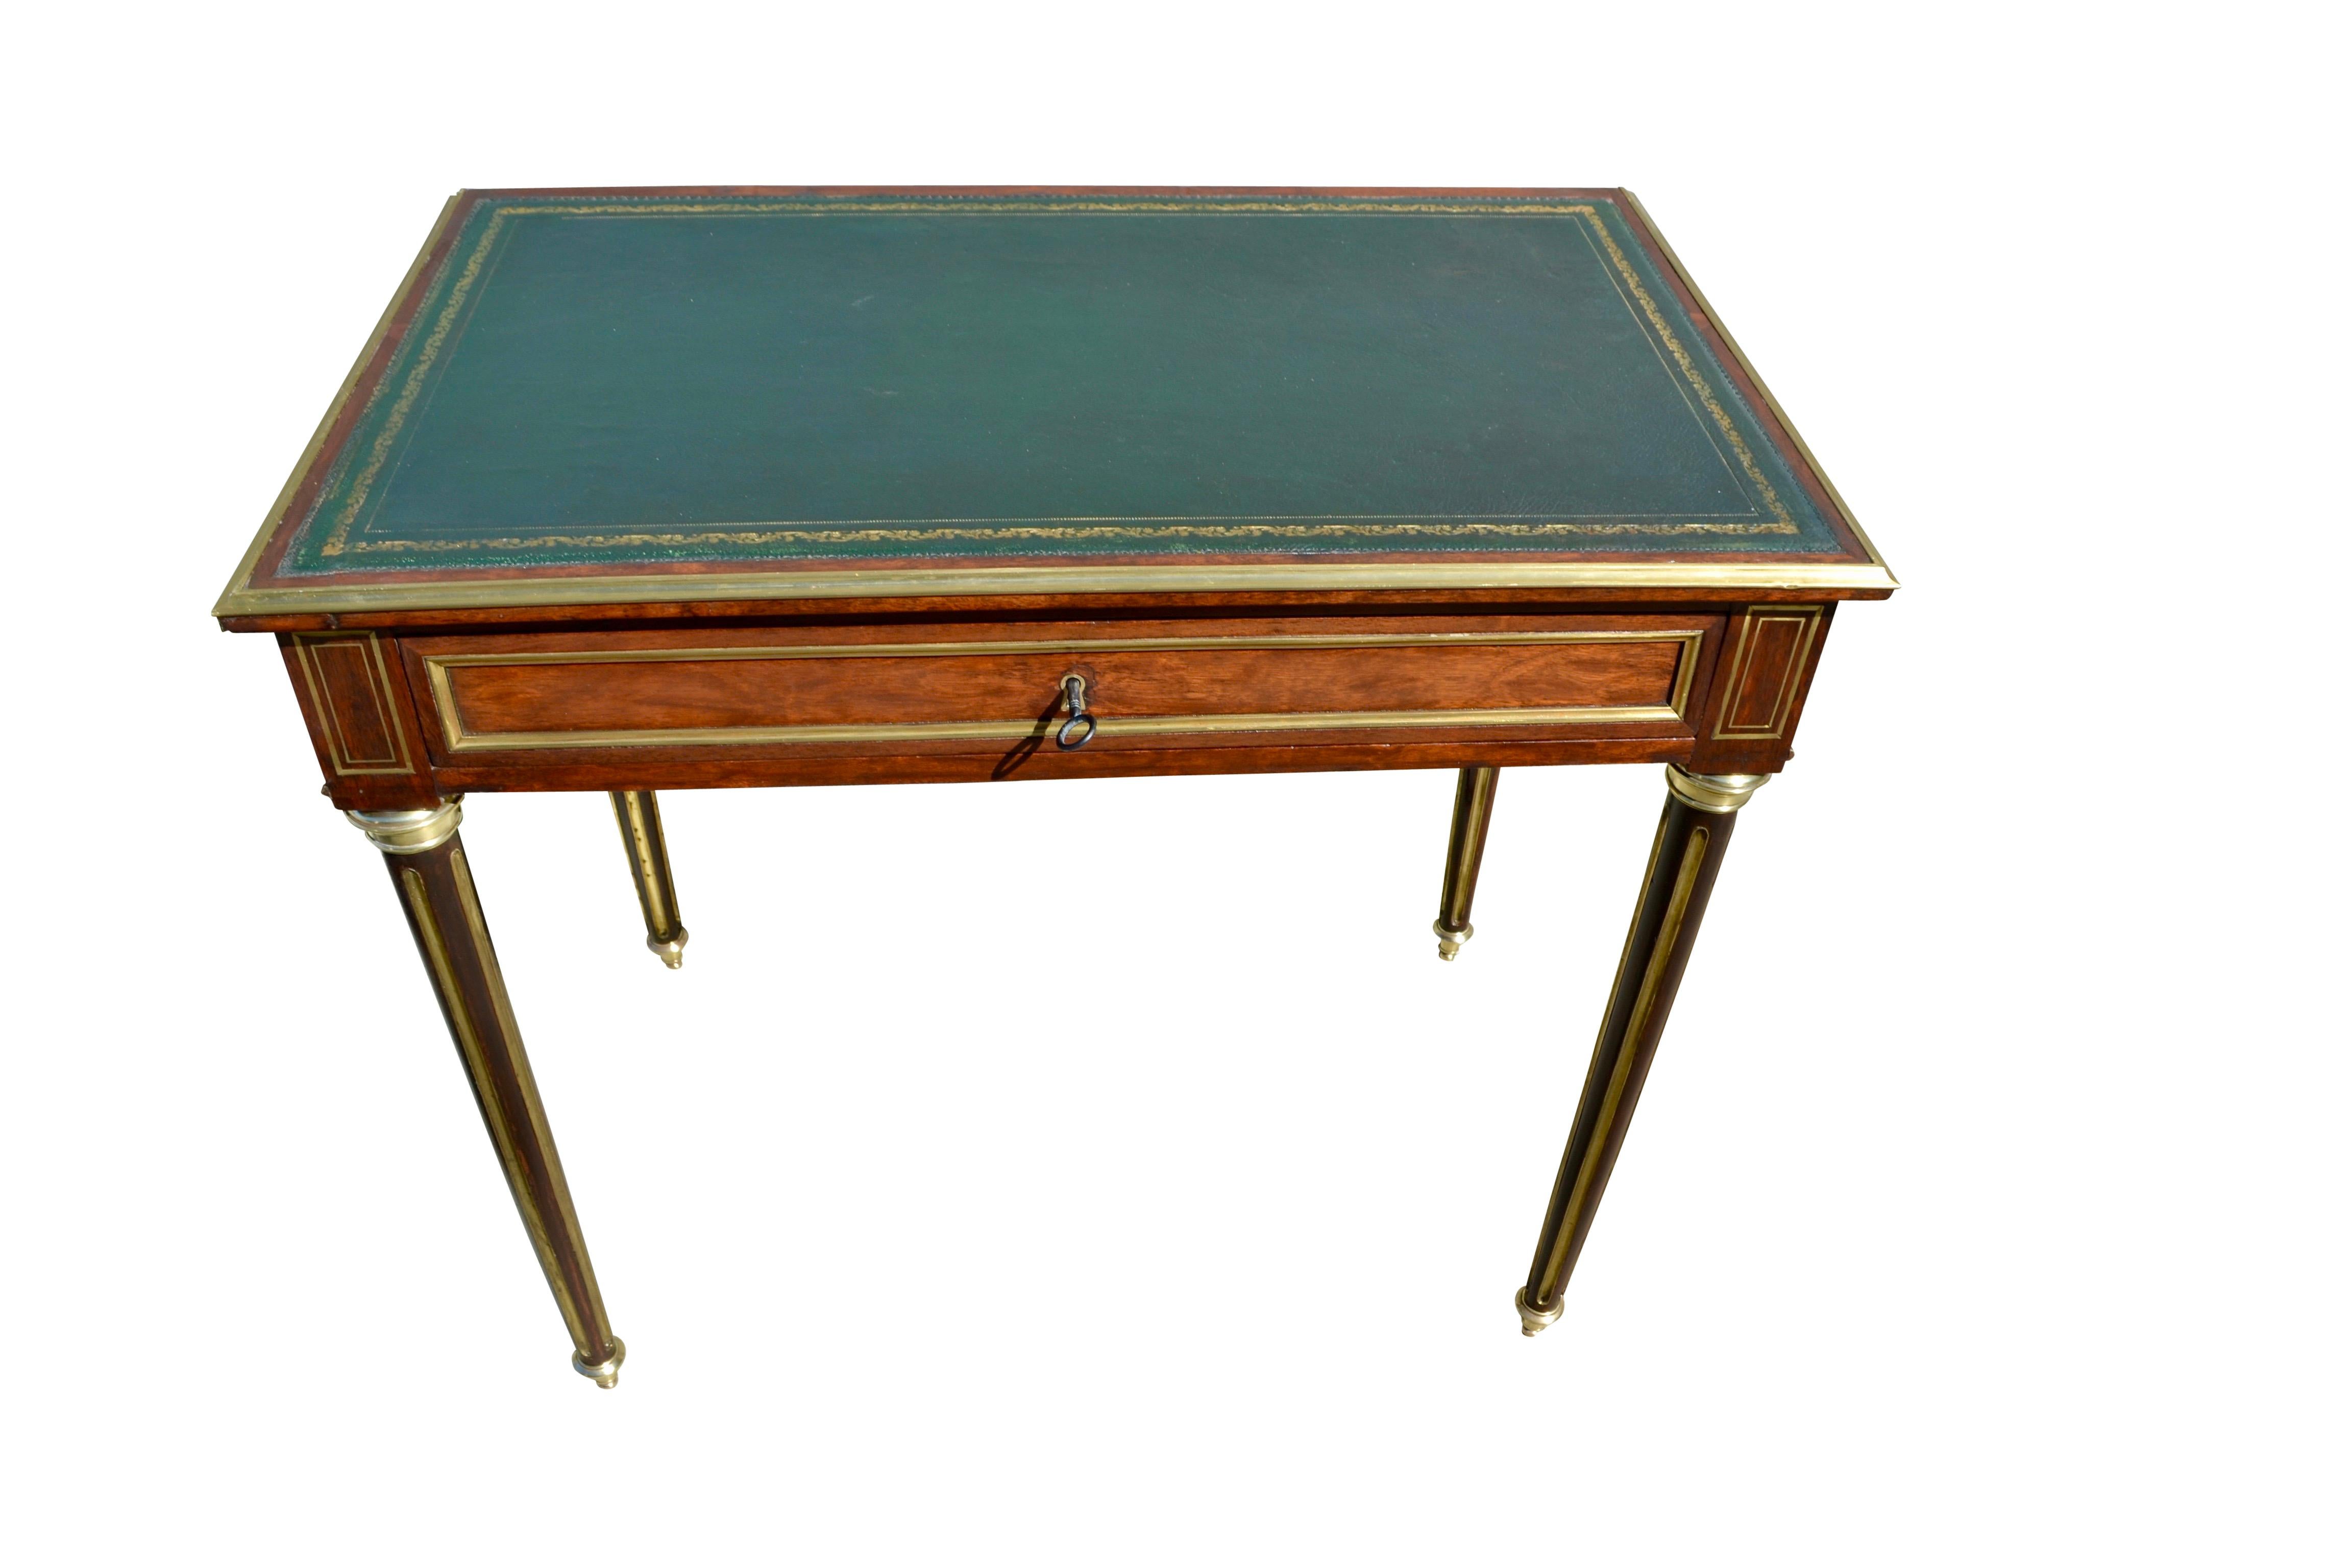 Table à écrire et console de style Louis XVI de la fin du XIXe siècle. La table en acajou a un plateau en cuir estampé vert bordé d'une garniture en bronze doré au-dessus d'un seul tiroir doublé en acajou avec sa serrure et sa clé d'origine. Des